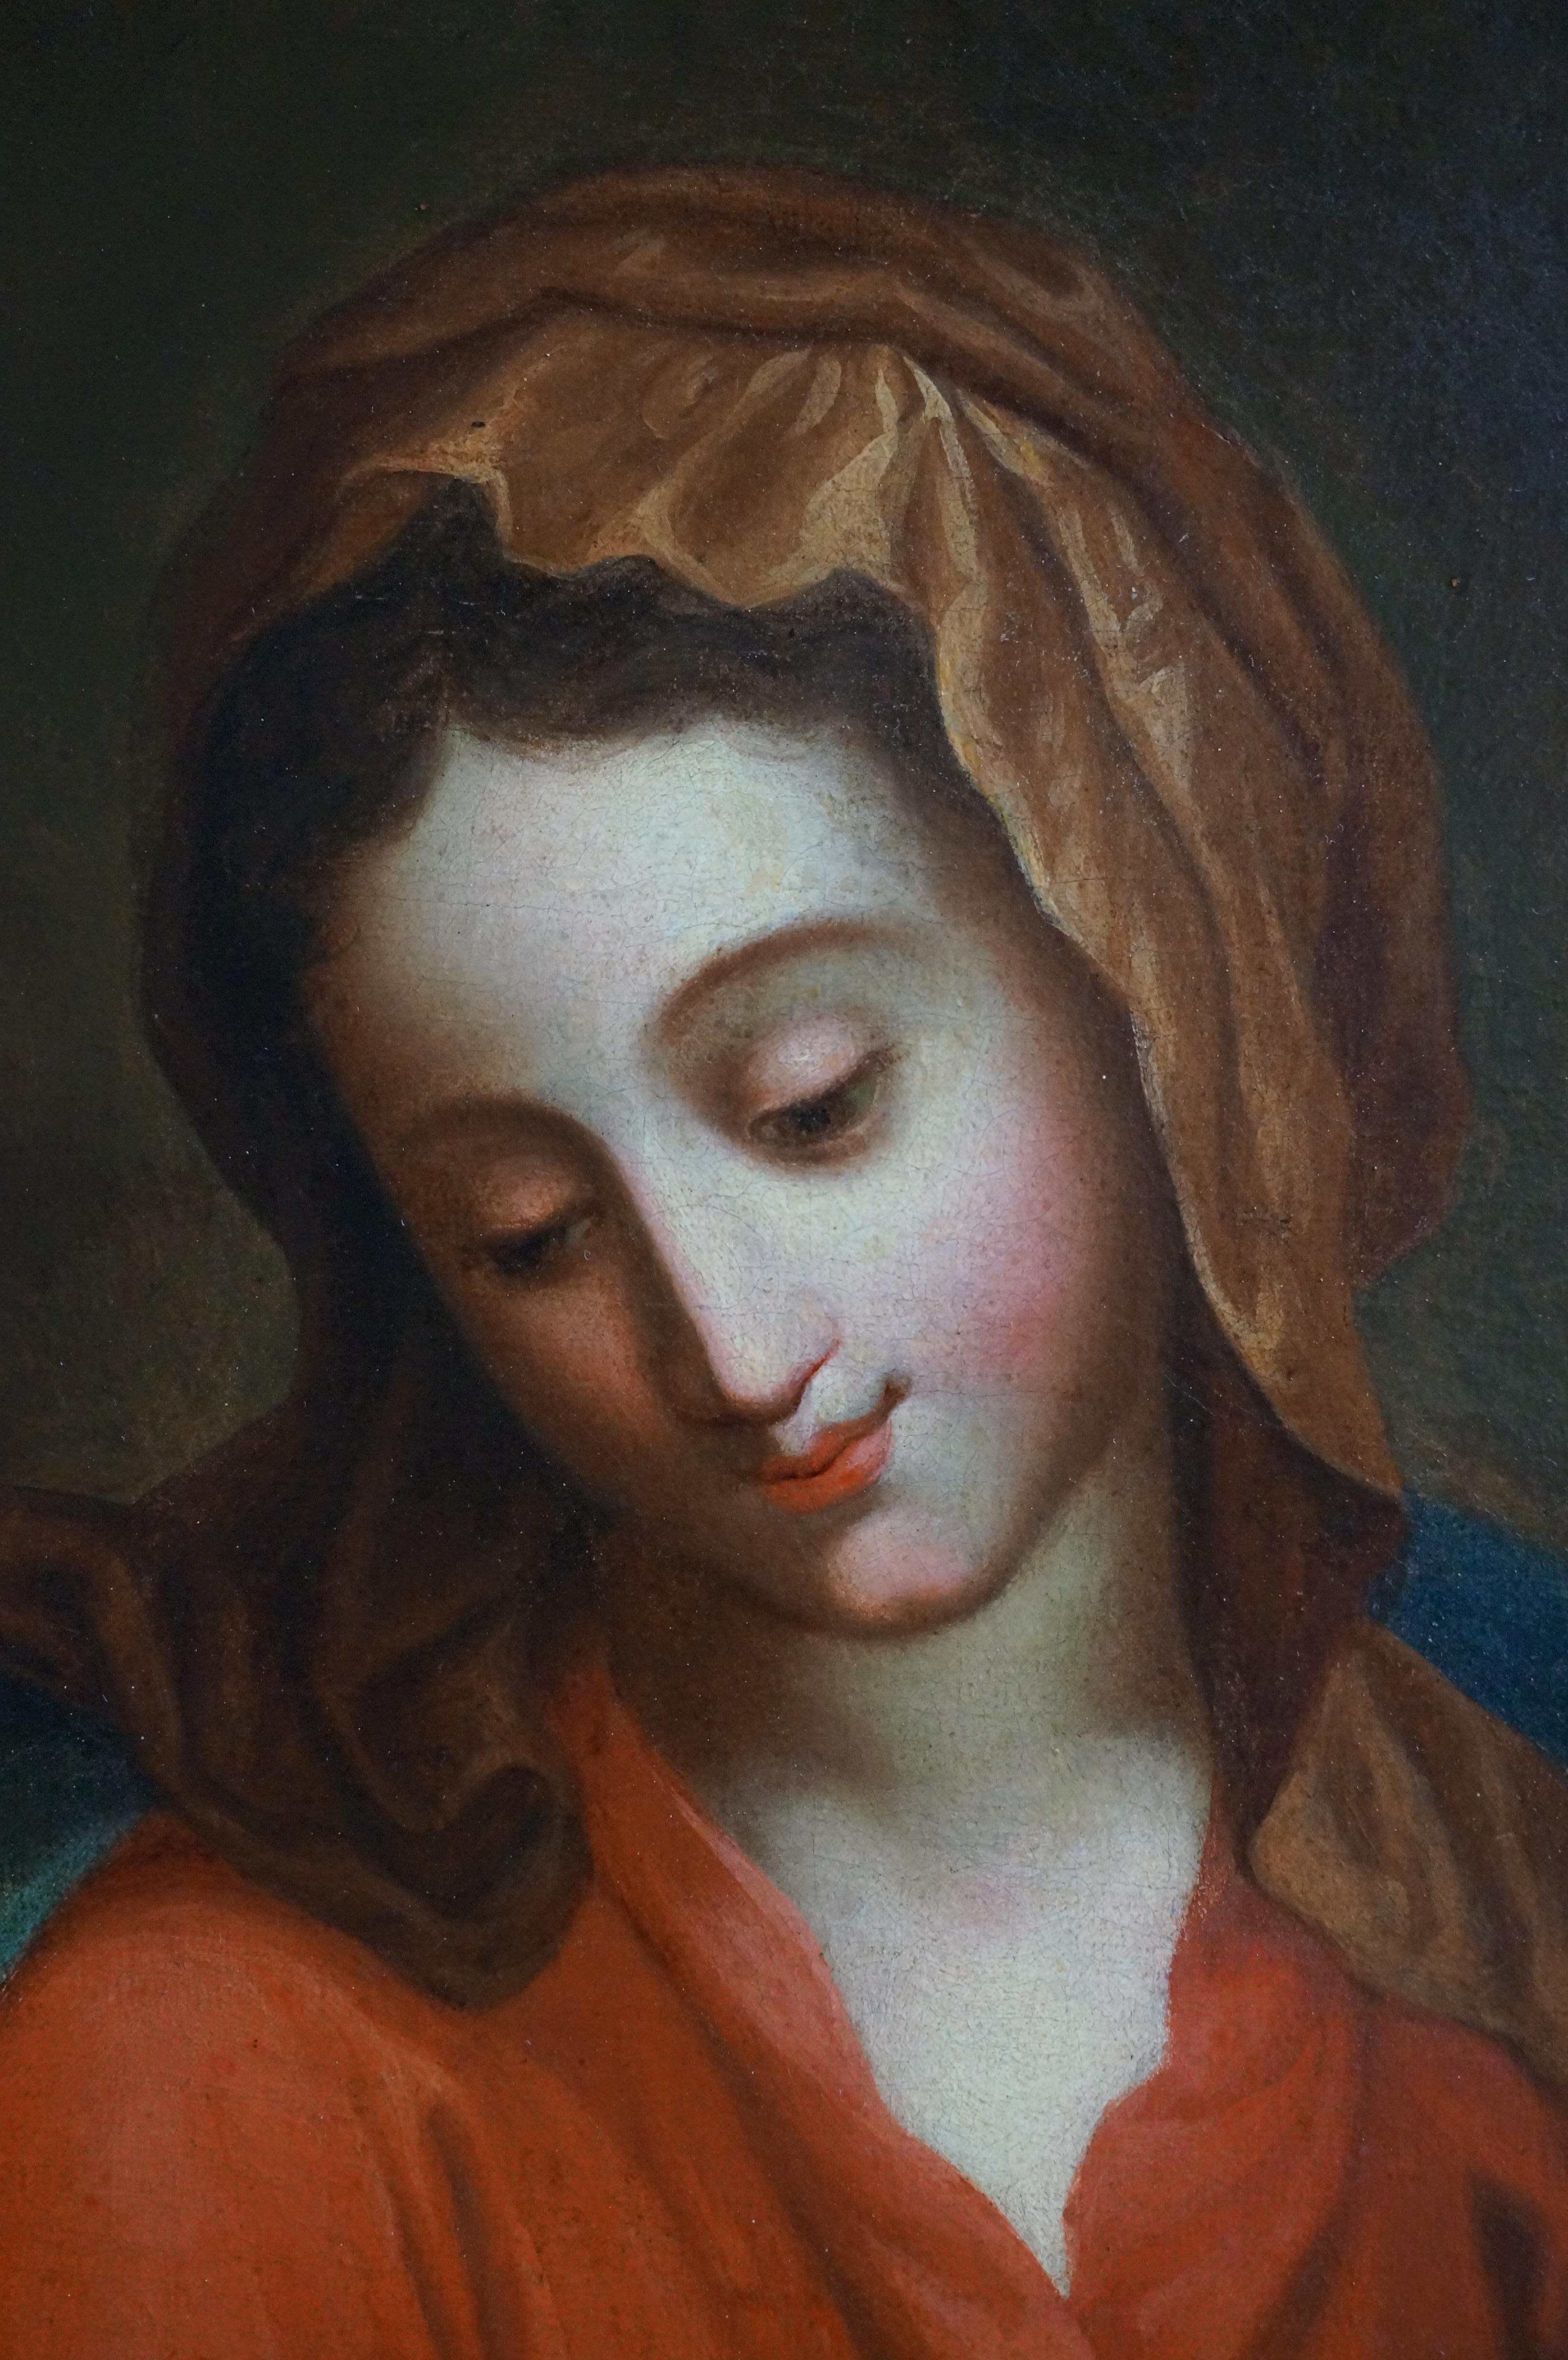 Italienische Schule, 18. Jahrhundert
Dargestellt sind die Madonna und das Jesuskind. Die Jungfrau Maria hält das Jesuskind liebevoll in ihren Armen. Das Kind, auf einem Stoffbündel liegend und mit einem Nimbus um den Kopf (Ausdruck seiner göttlichen